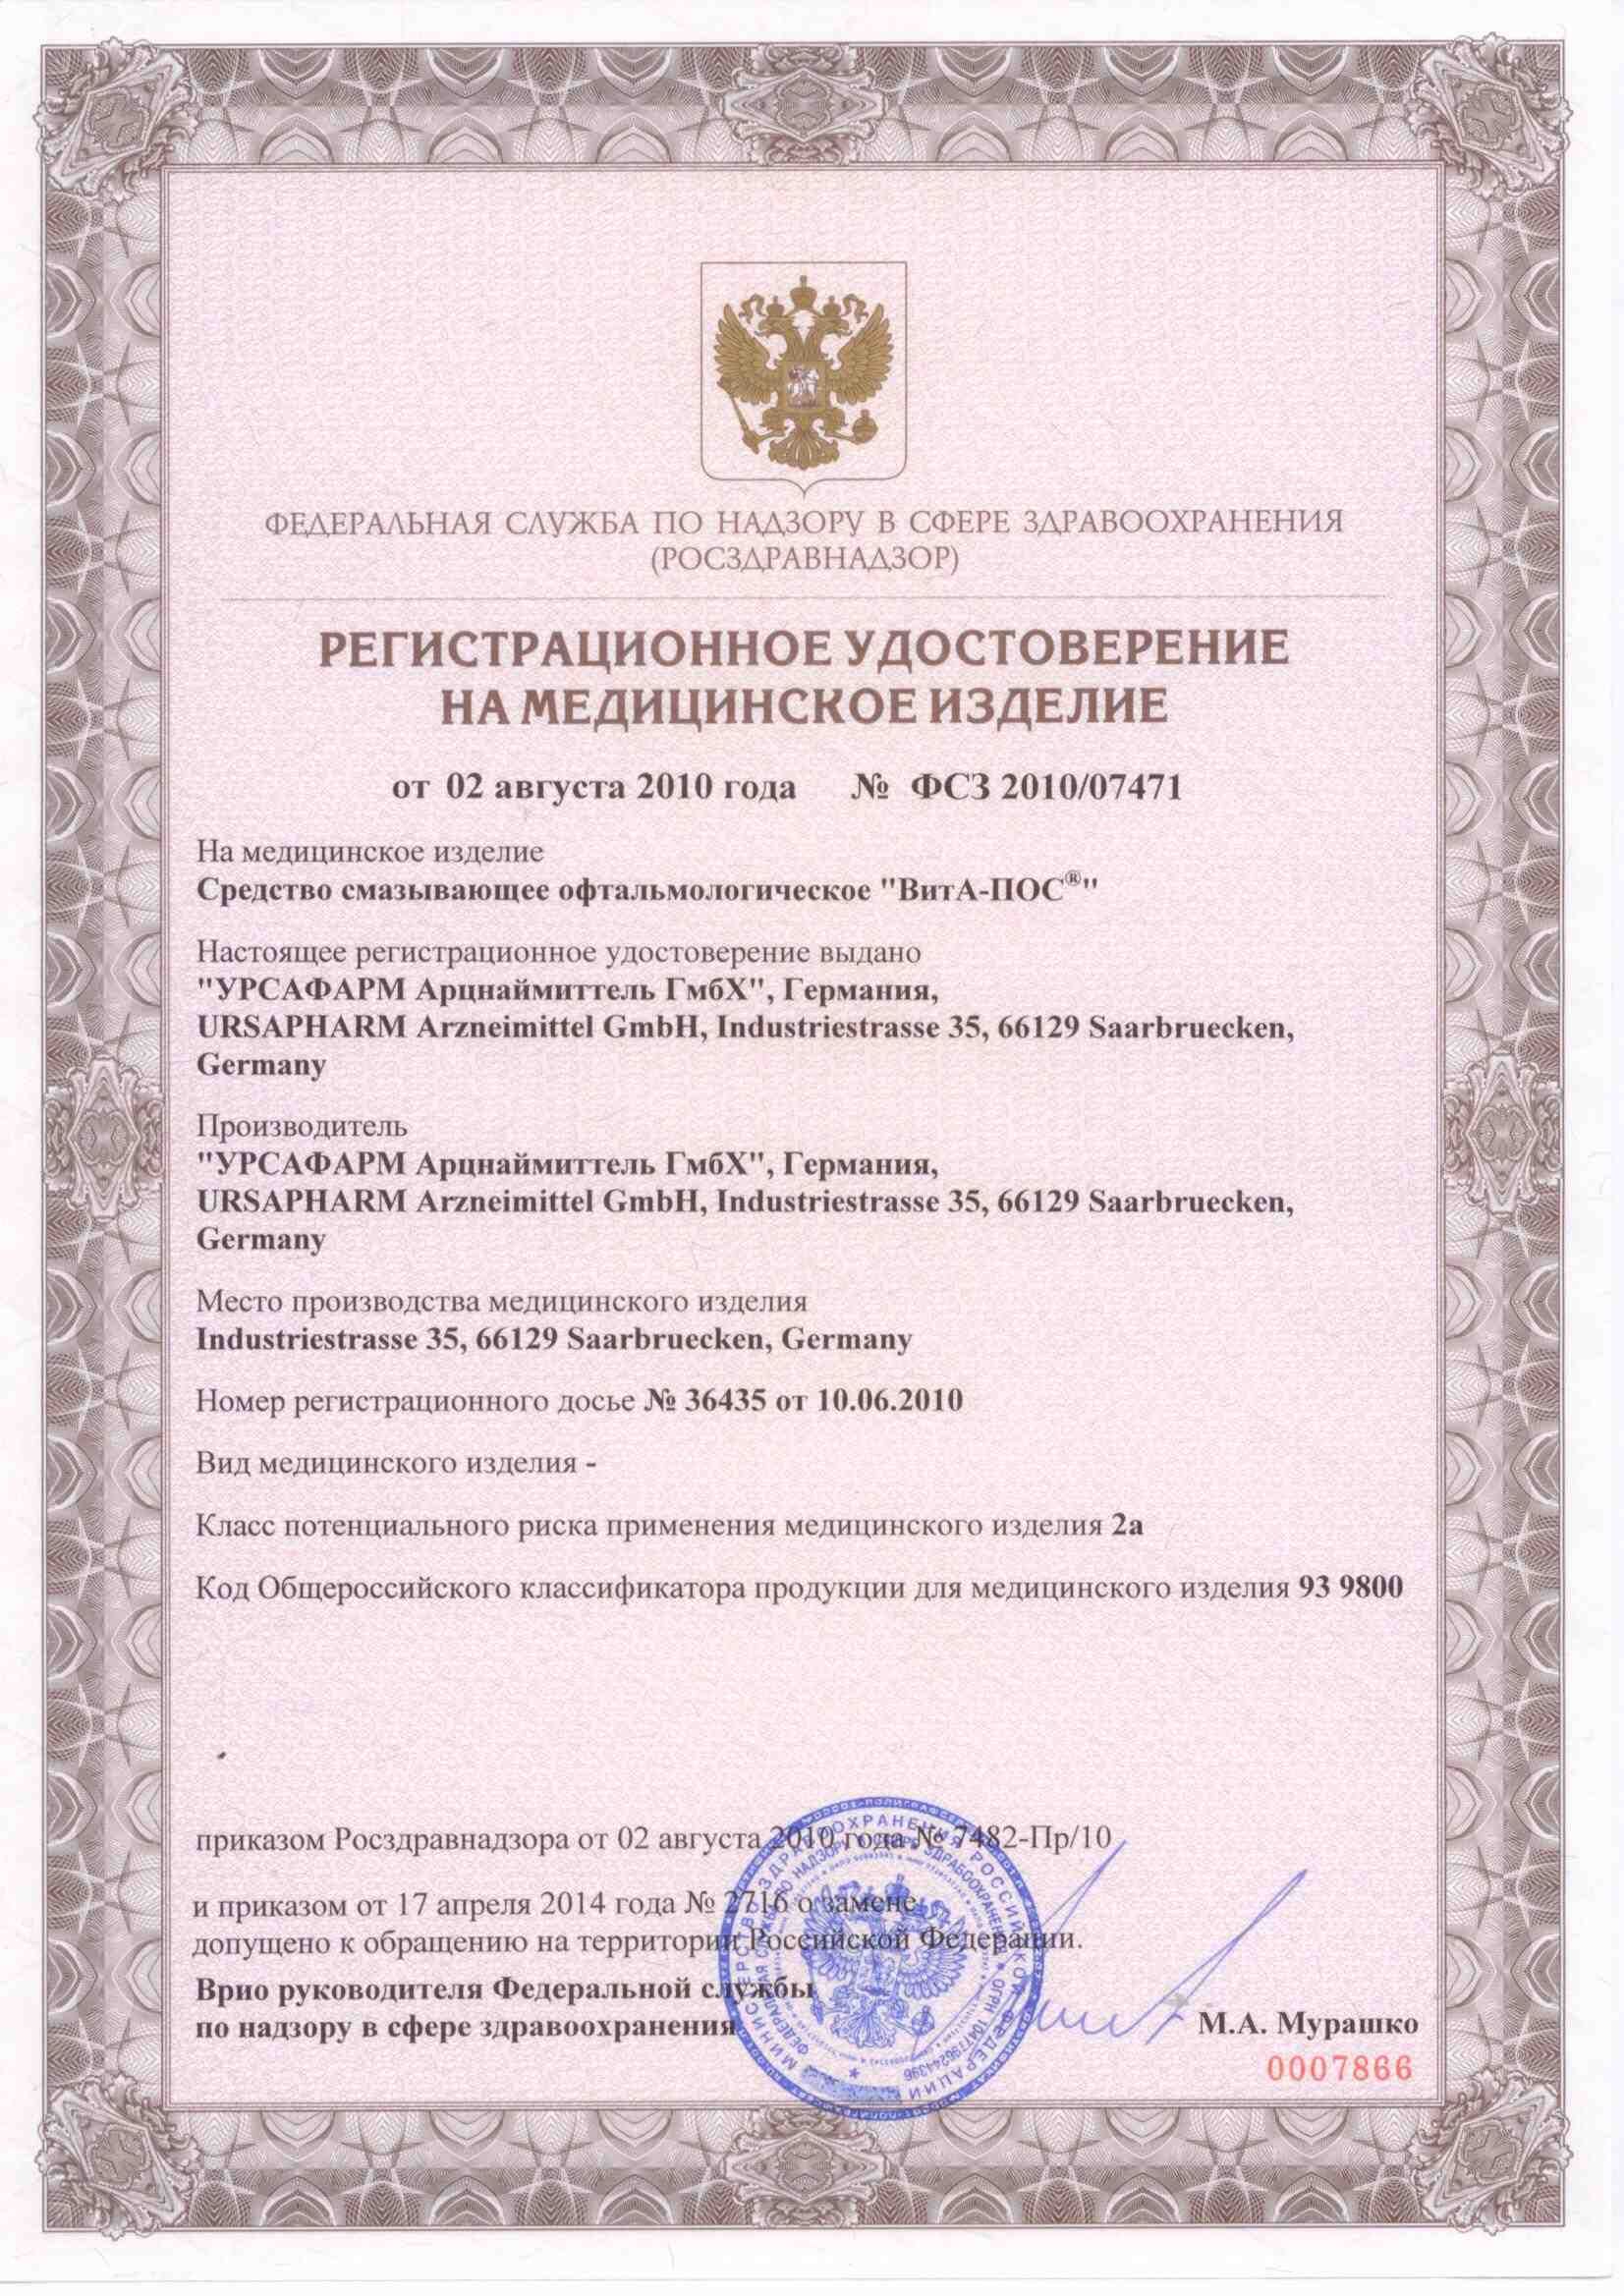 ВитА-ПОС Средство смазывающее офтальмологическое сертификат